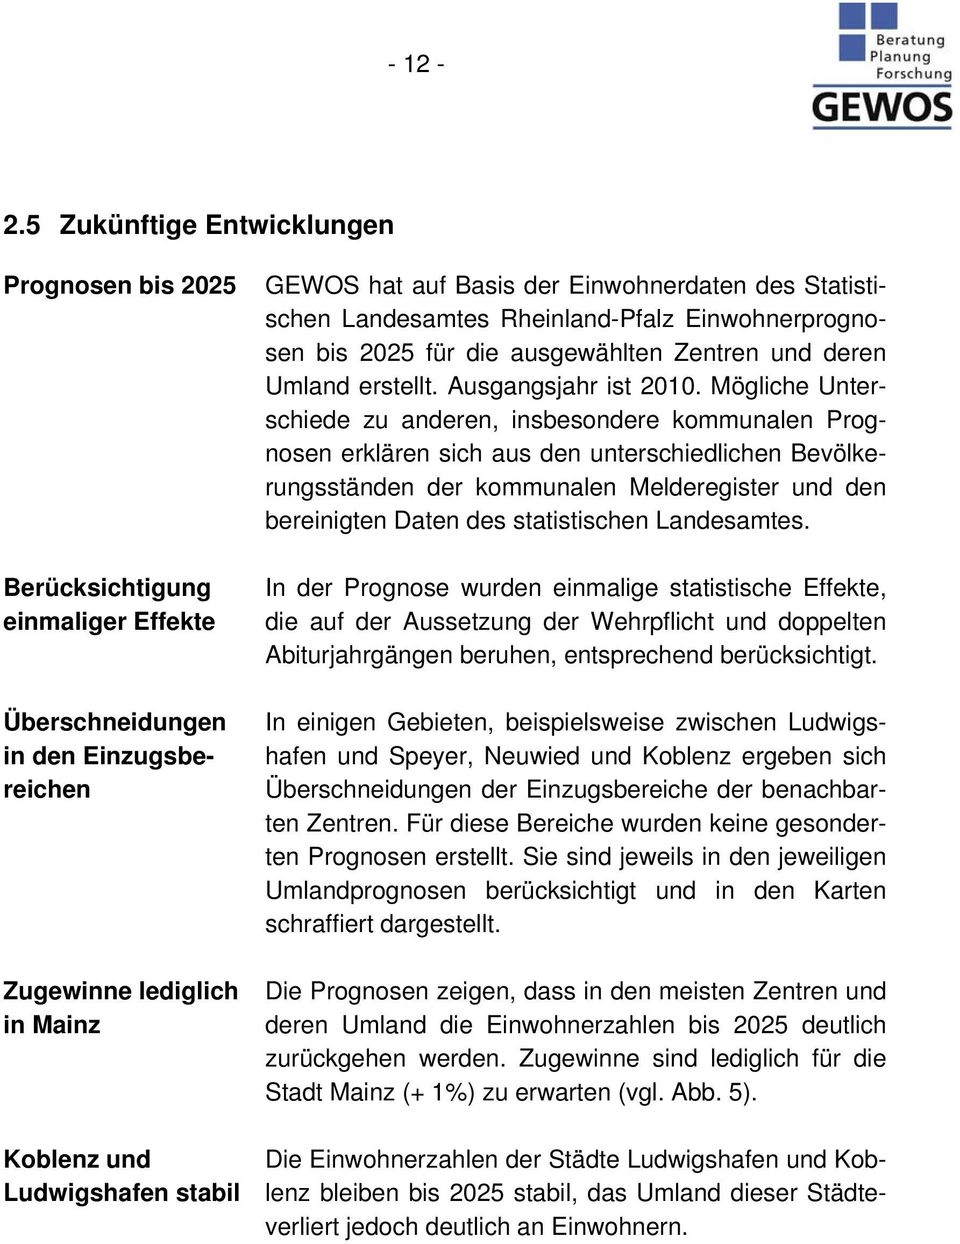 Basis der Einwohnerdaten des Statistischen Landesamtes Rheinland-Pfalz Einwohnerprognosen bis 2025 für die ausgewählten Zentren und deren Umland erstellt. Ausgangsjahr ist 2010.